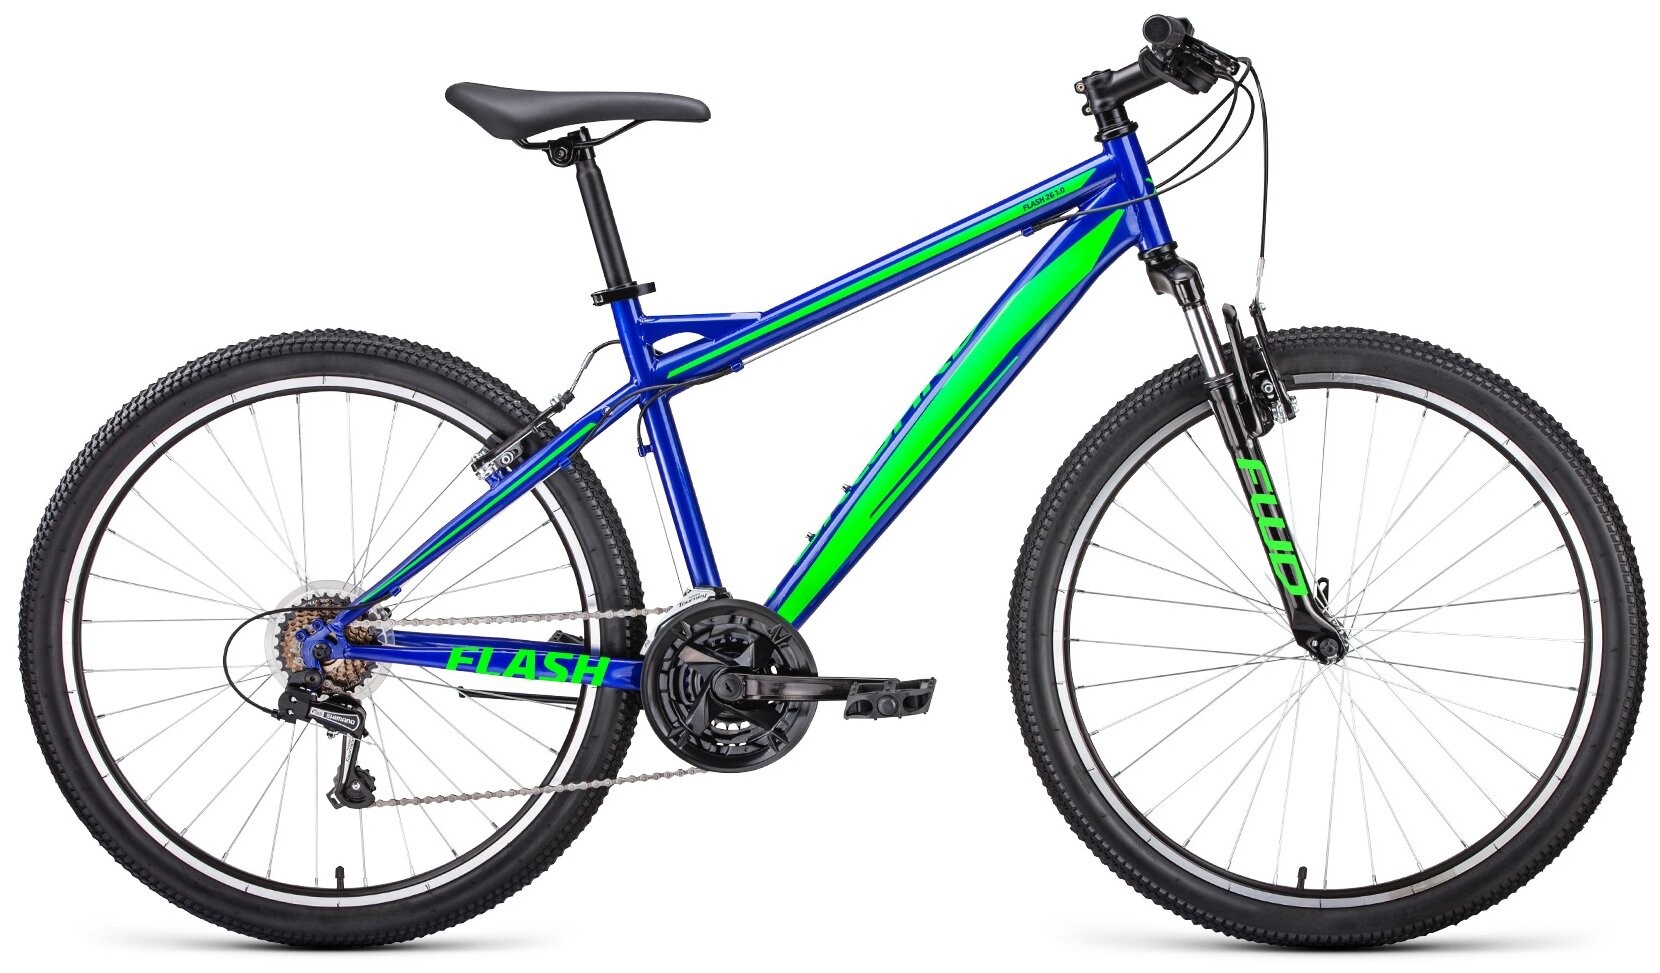 Велосипед горный хардтейл FORWARD FLASH 26 1.2 26" 19" синий/ярко-зеленый RBKW1M16G032 2021